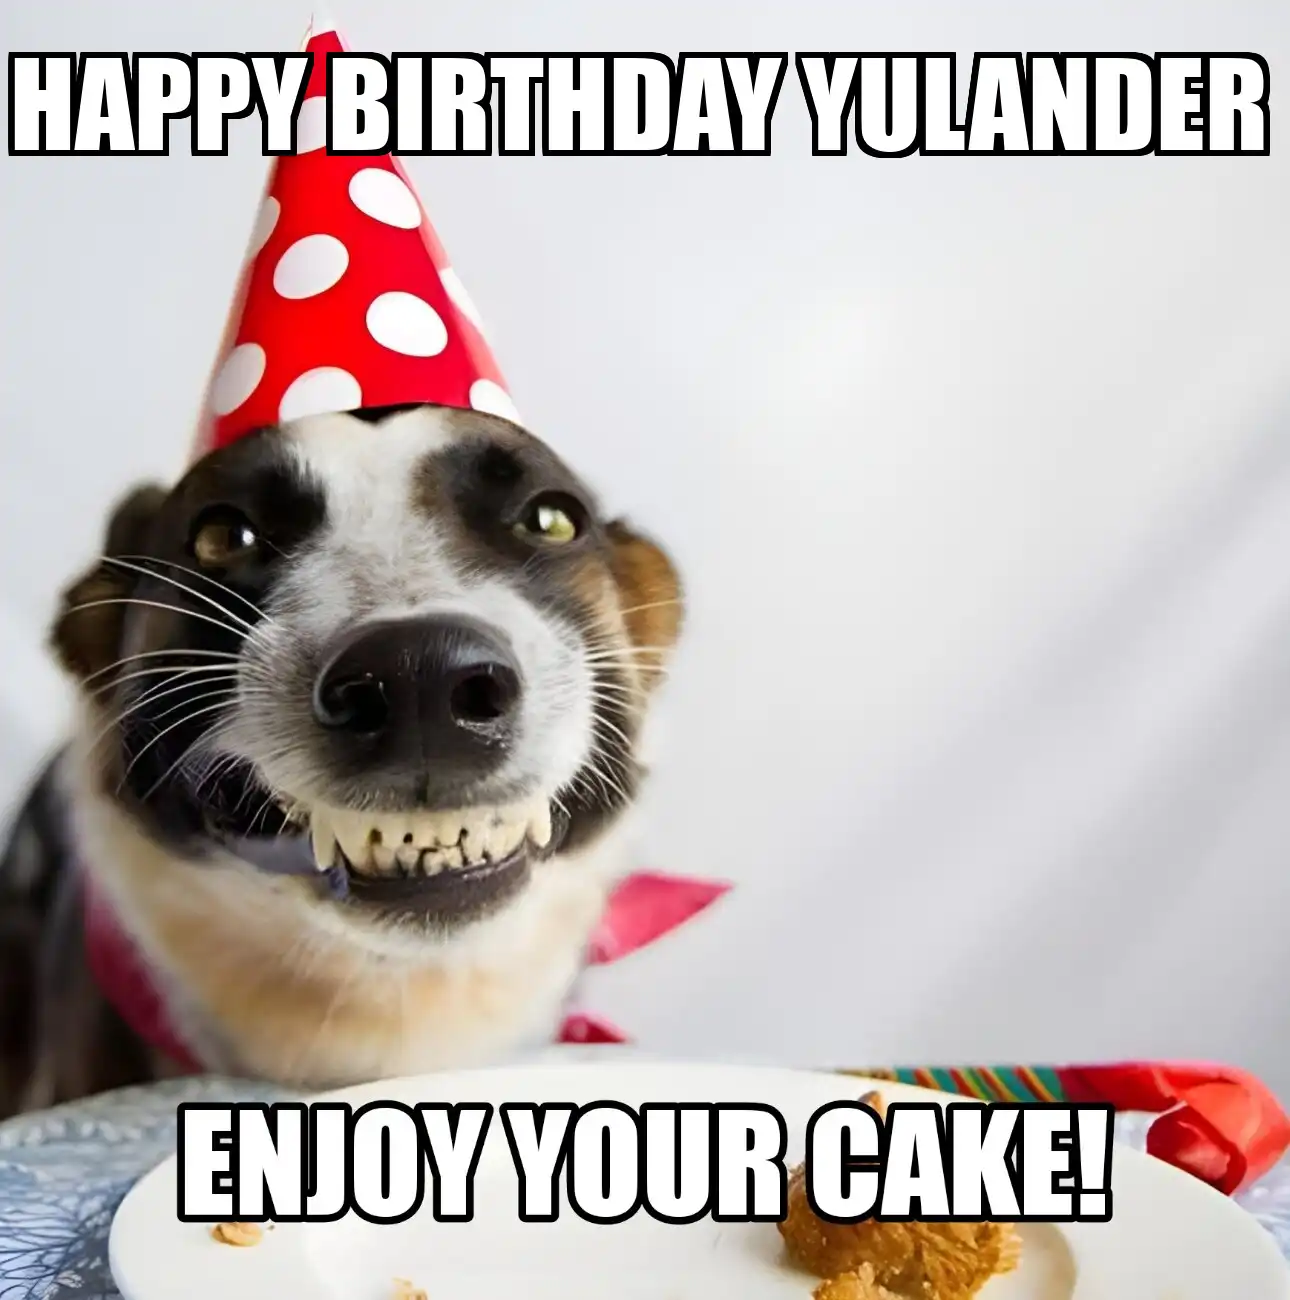 Happy Birthday Yulander Enjoy Your Cake Dog Meme